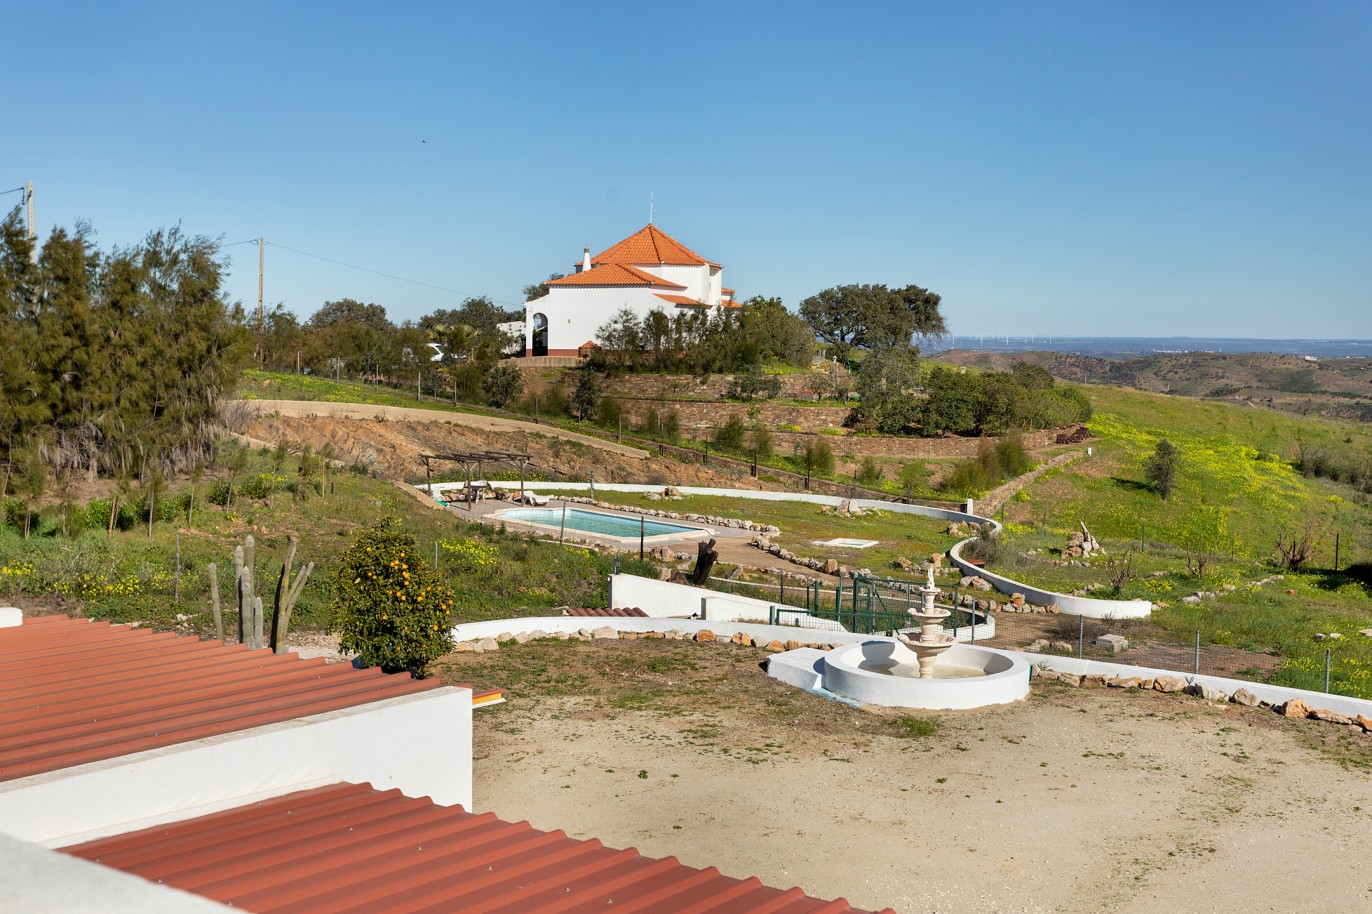 Moradia isolada com área comercial, para venda em Tavira, Algarve_215989